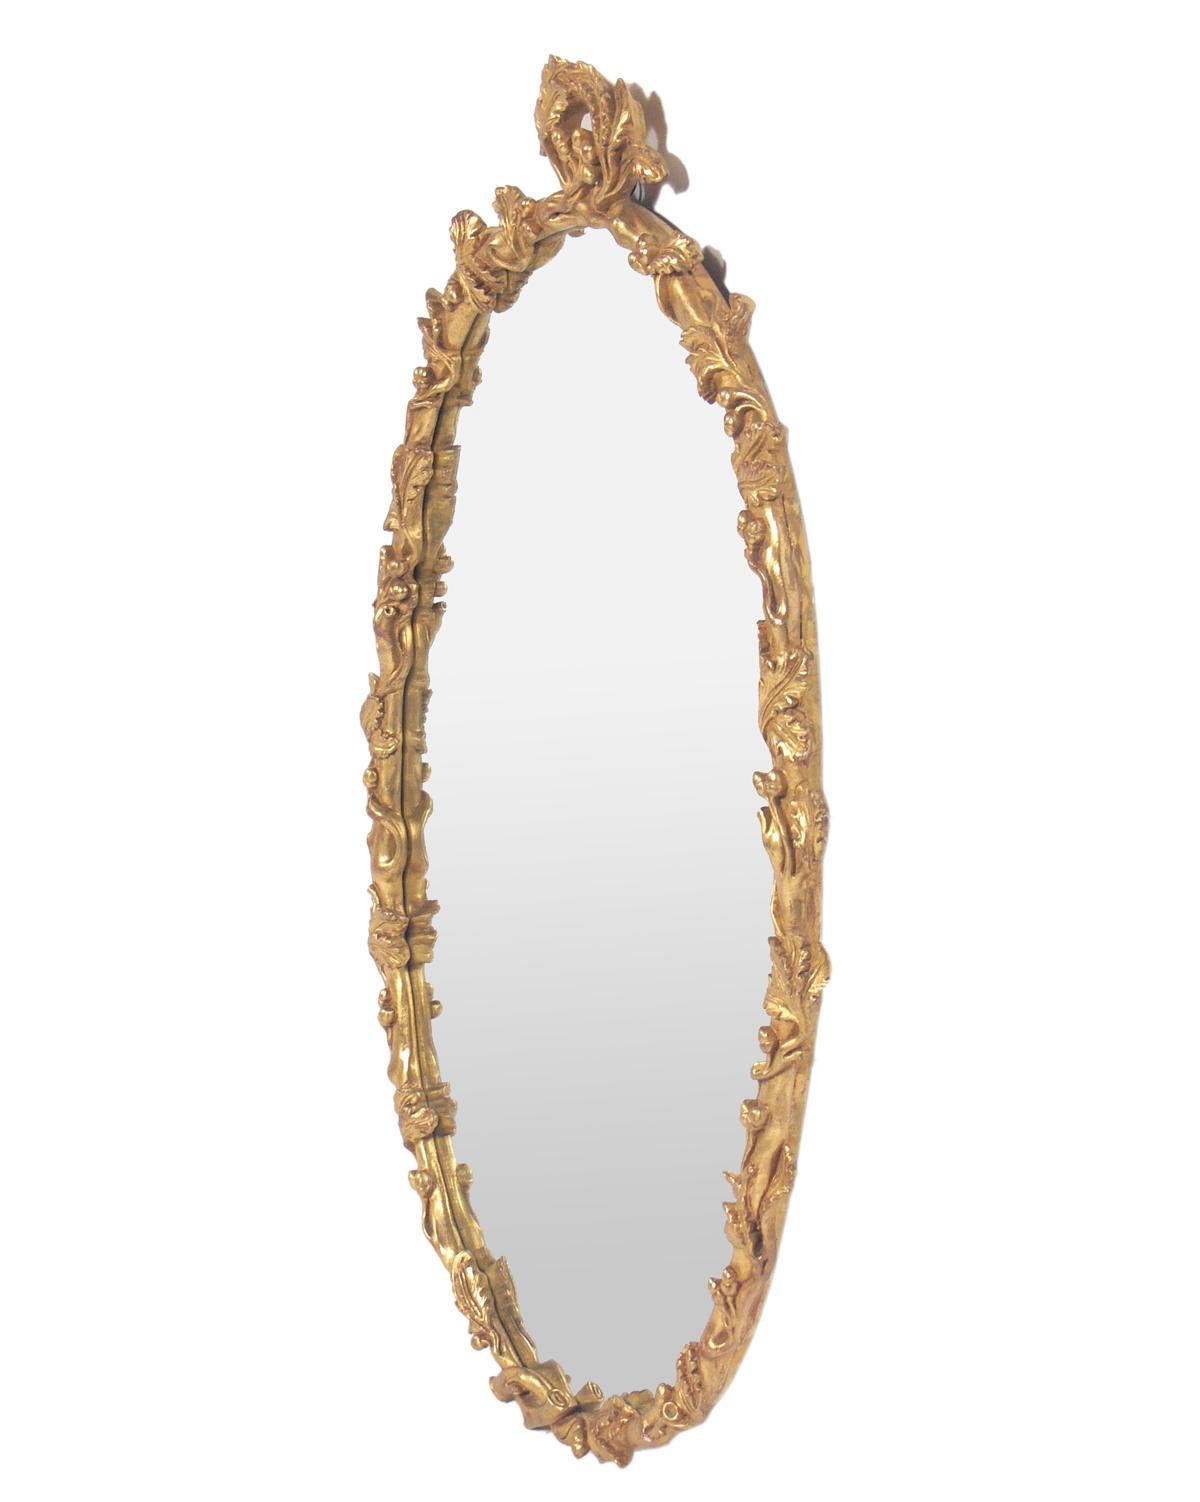 Blattgoldener Branch-Spiegel, vermutlich italienisch, ca. 1960er Jahre. Behält warme ursprüngliche Patina sowohl auf den vergoldeten Rahmen und Spiegel, die nur mit dem Alter kommen.